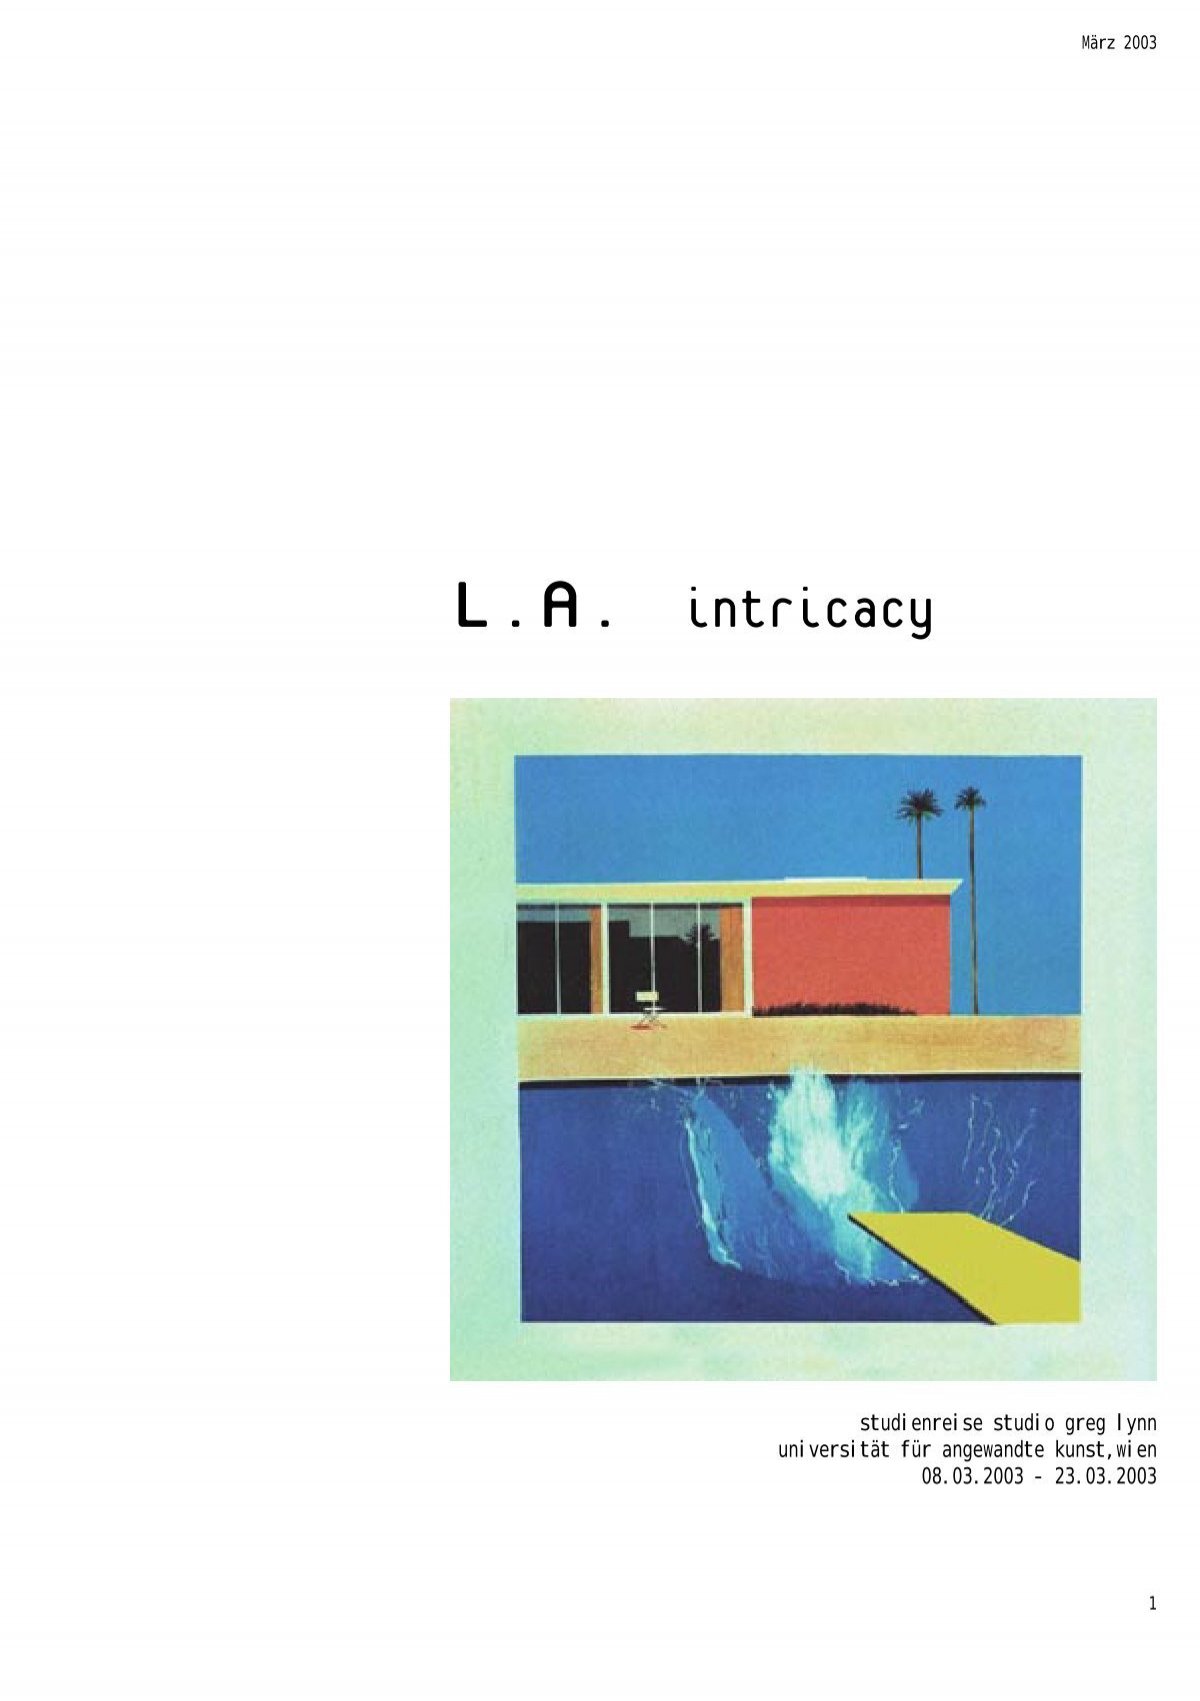 L.A. intricacy - Index of - Universität für angewandte Kunst Wien